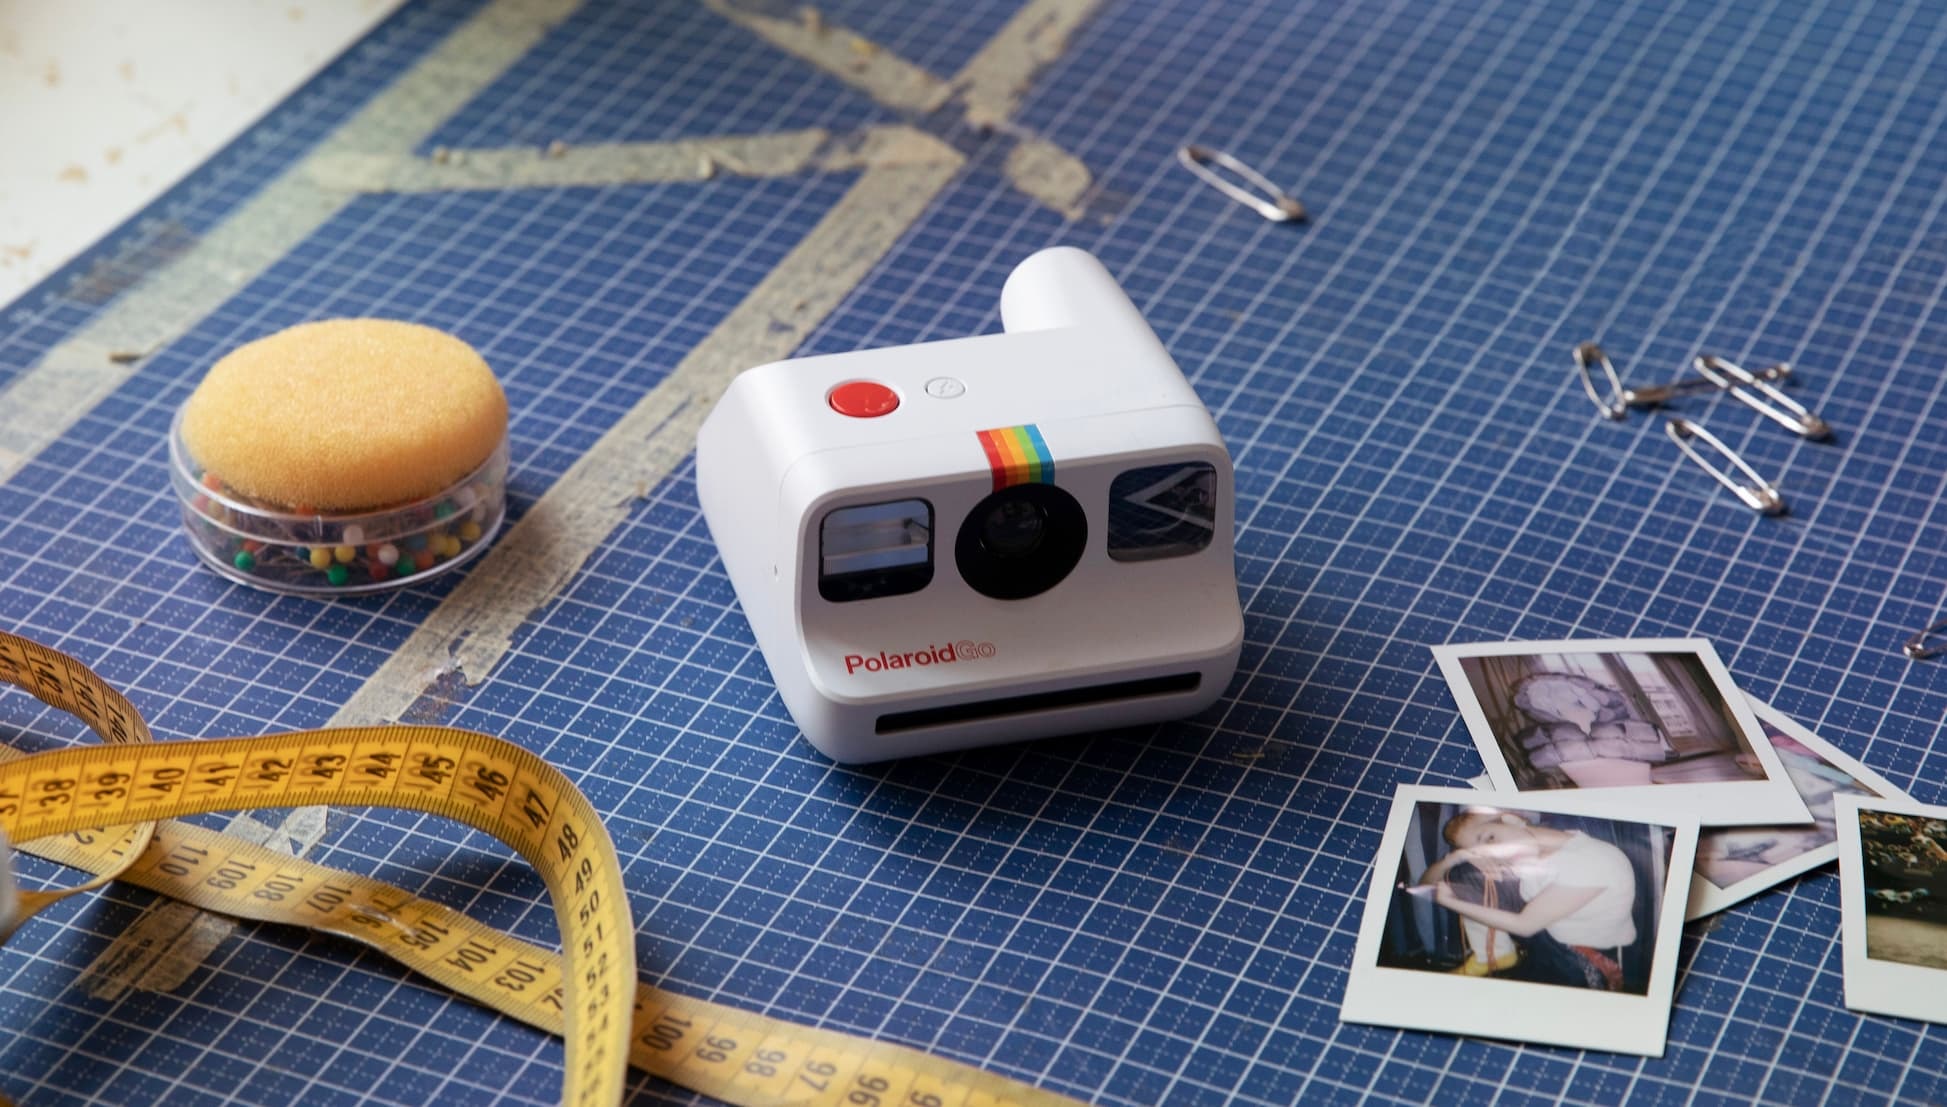 A Polaroid megalkotta a világ legkisebb instant fényképezőgépét